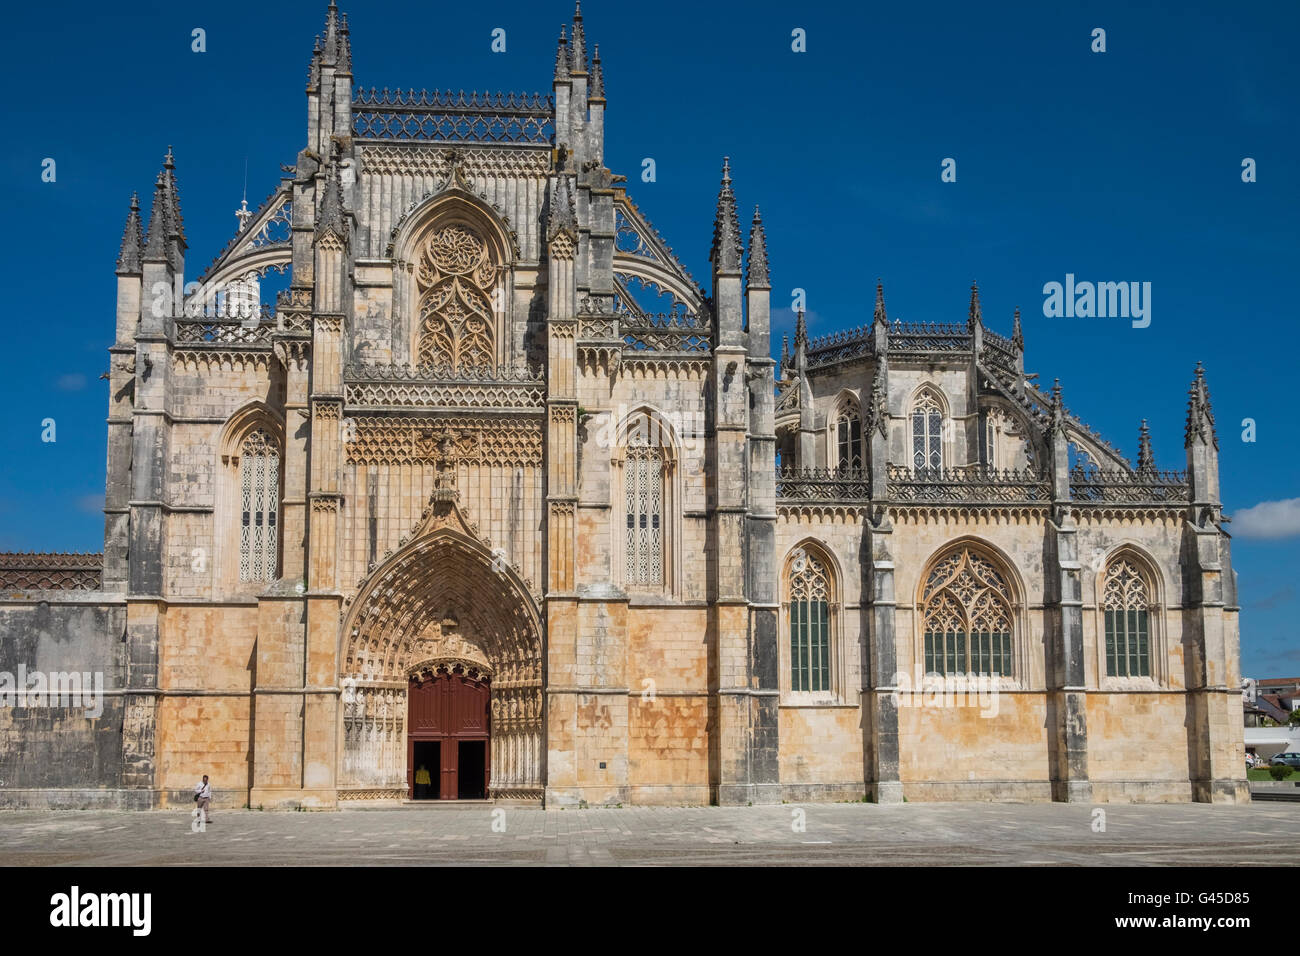 Gotische äußere des Kloster Batalha (Mosteiro da Batalha), ein UNESCO-Weltkulturerbe, Batalha, Portugal Stockfoto